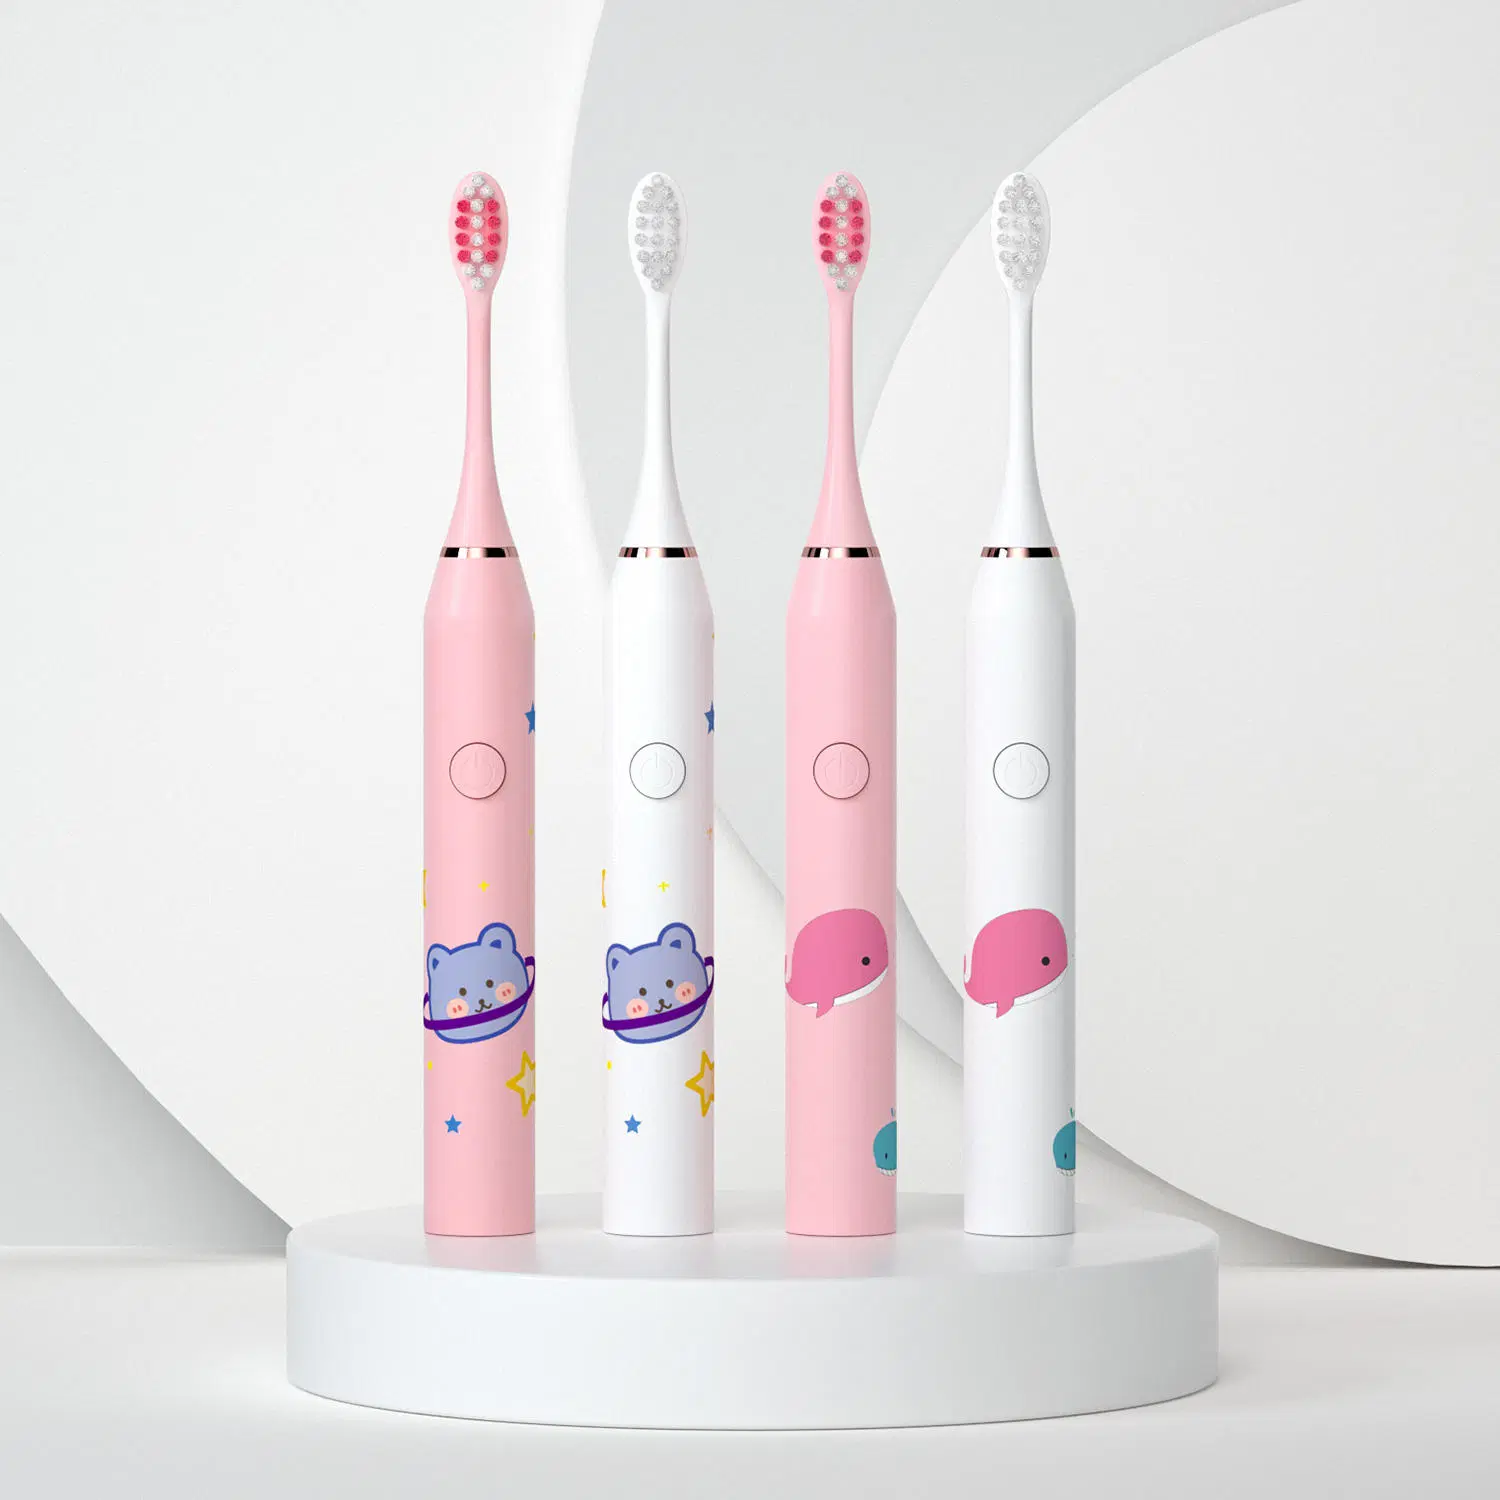 Sonic recargable Cartoon Smart cepillos de dientes para niños cepillo de dientes eléctrico impermeable para niños